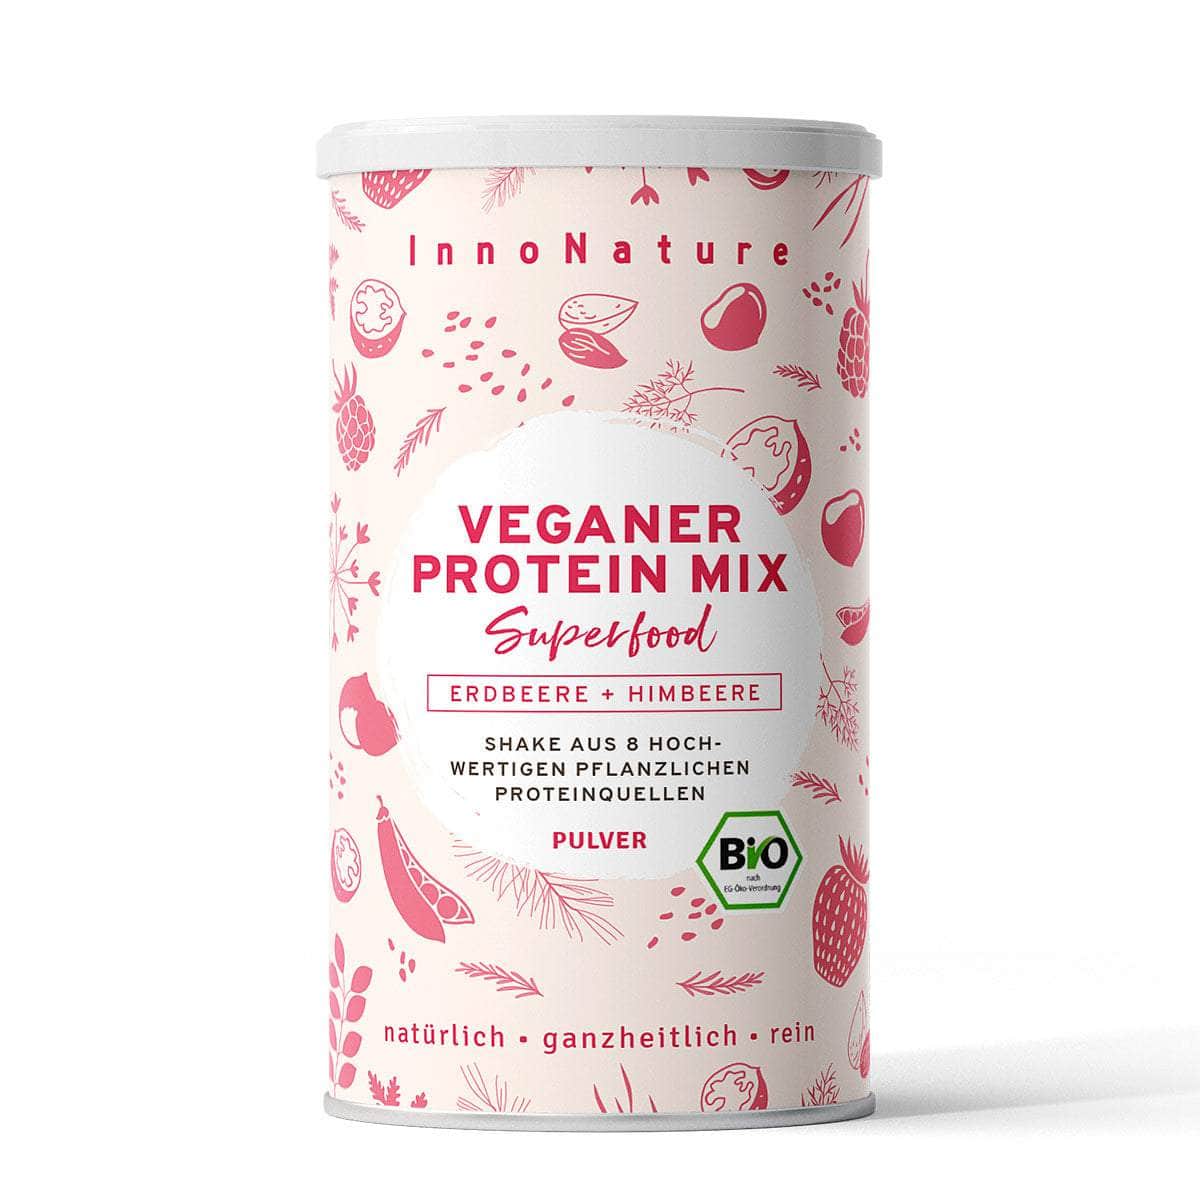 InnoNature Pulver 33 Portionen (500g) Bio Veganer Protein Mix Erdbeere + Himbeere